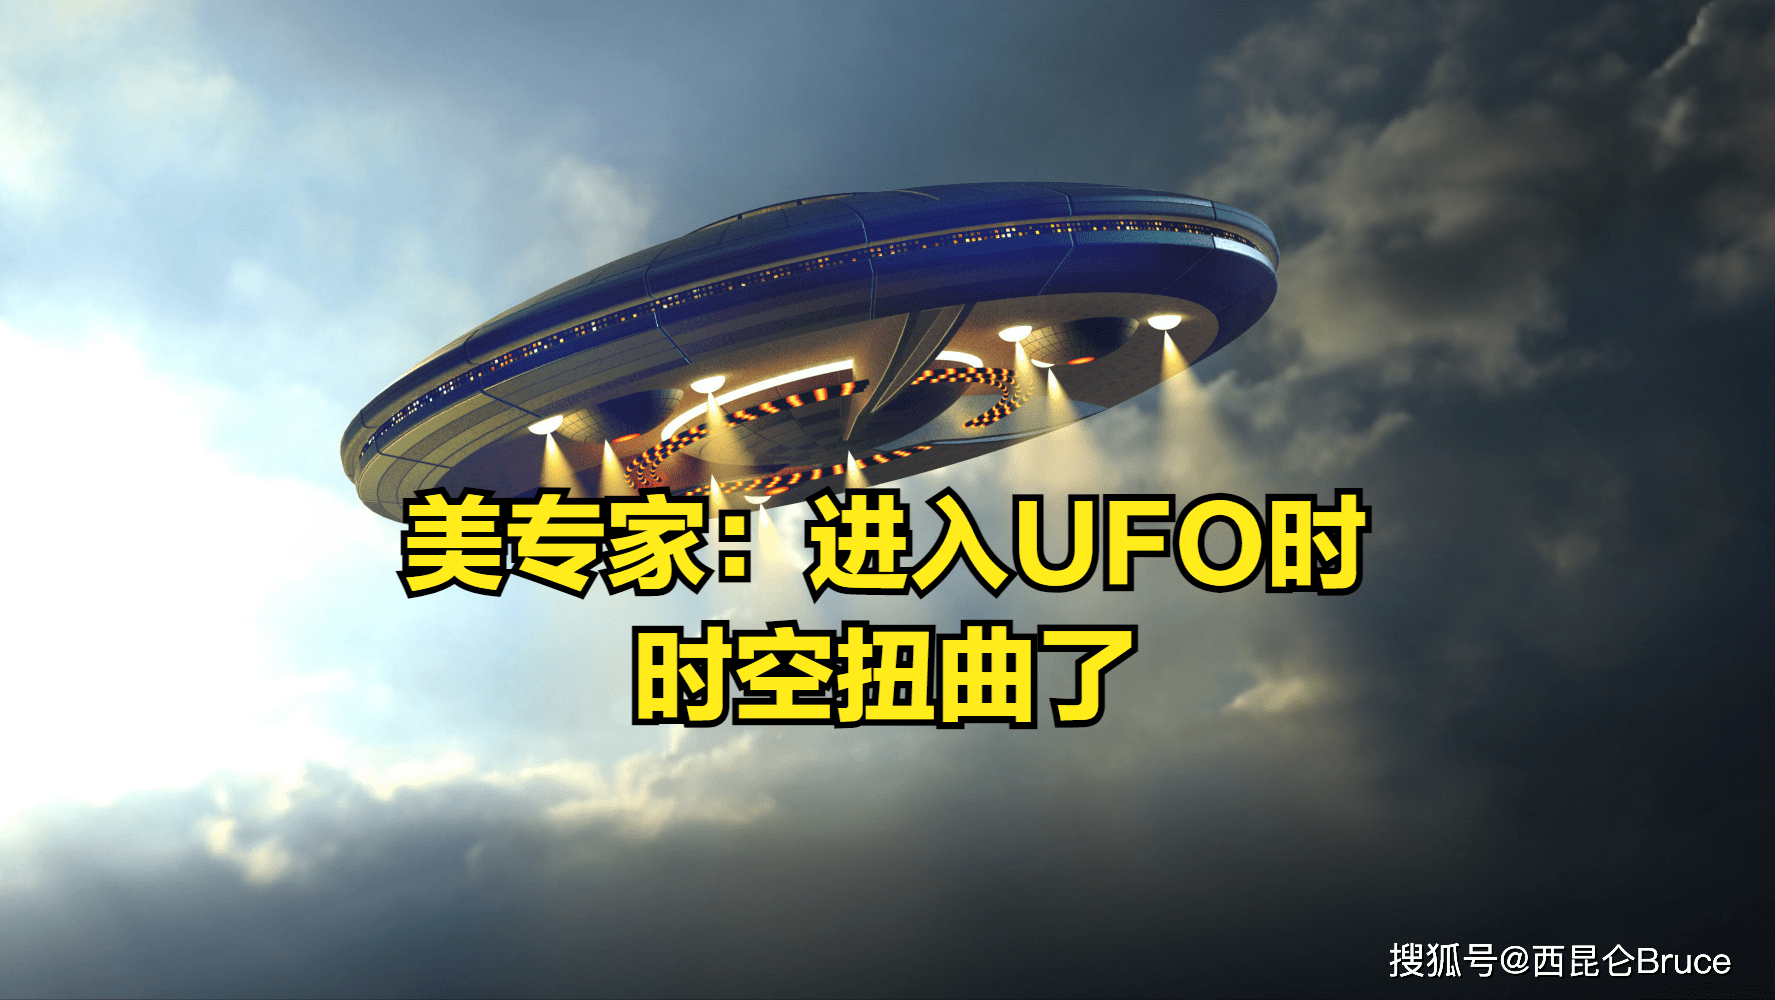 瞒不住了？美国调查人员爆料：进入坠毁UFO时发生了“时空扭曲”